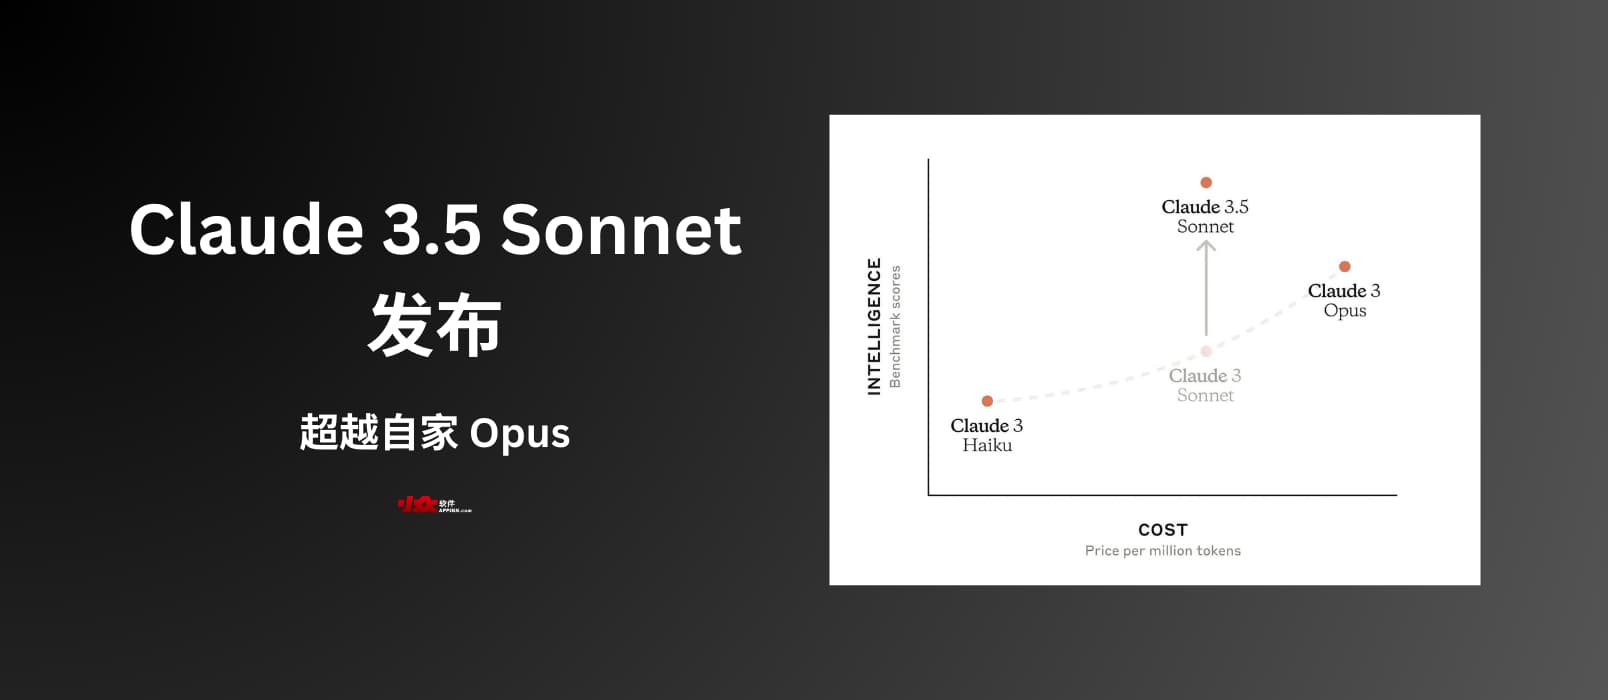 Claude 3.5 Sonnet 发布，超越自家的人工智能模型 Claude 3 Opus